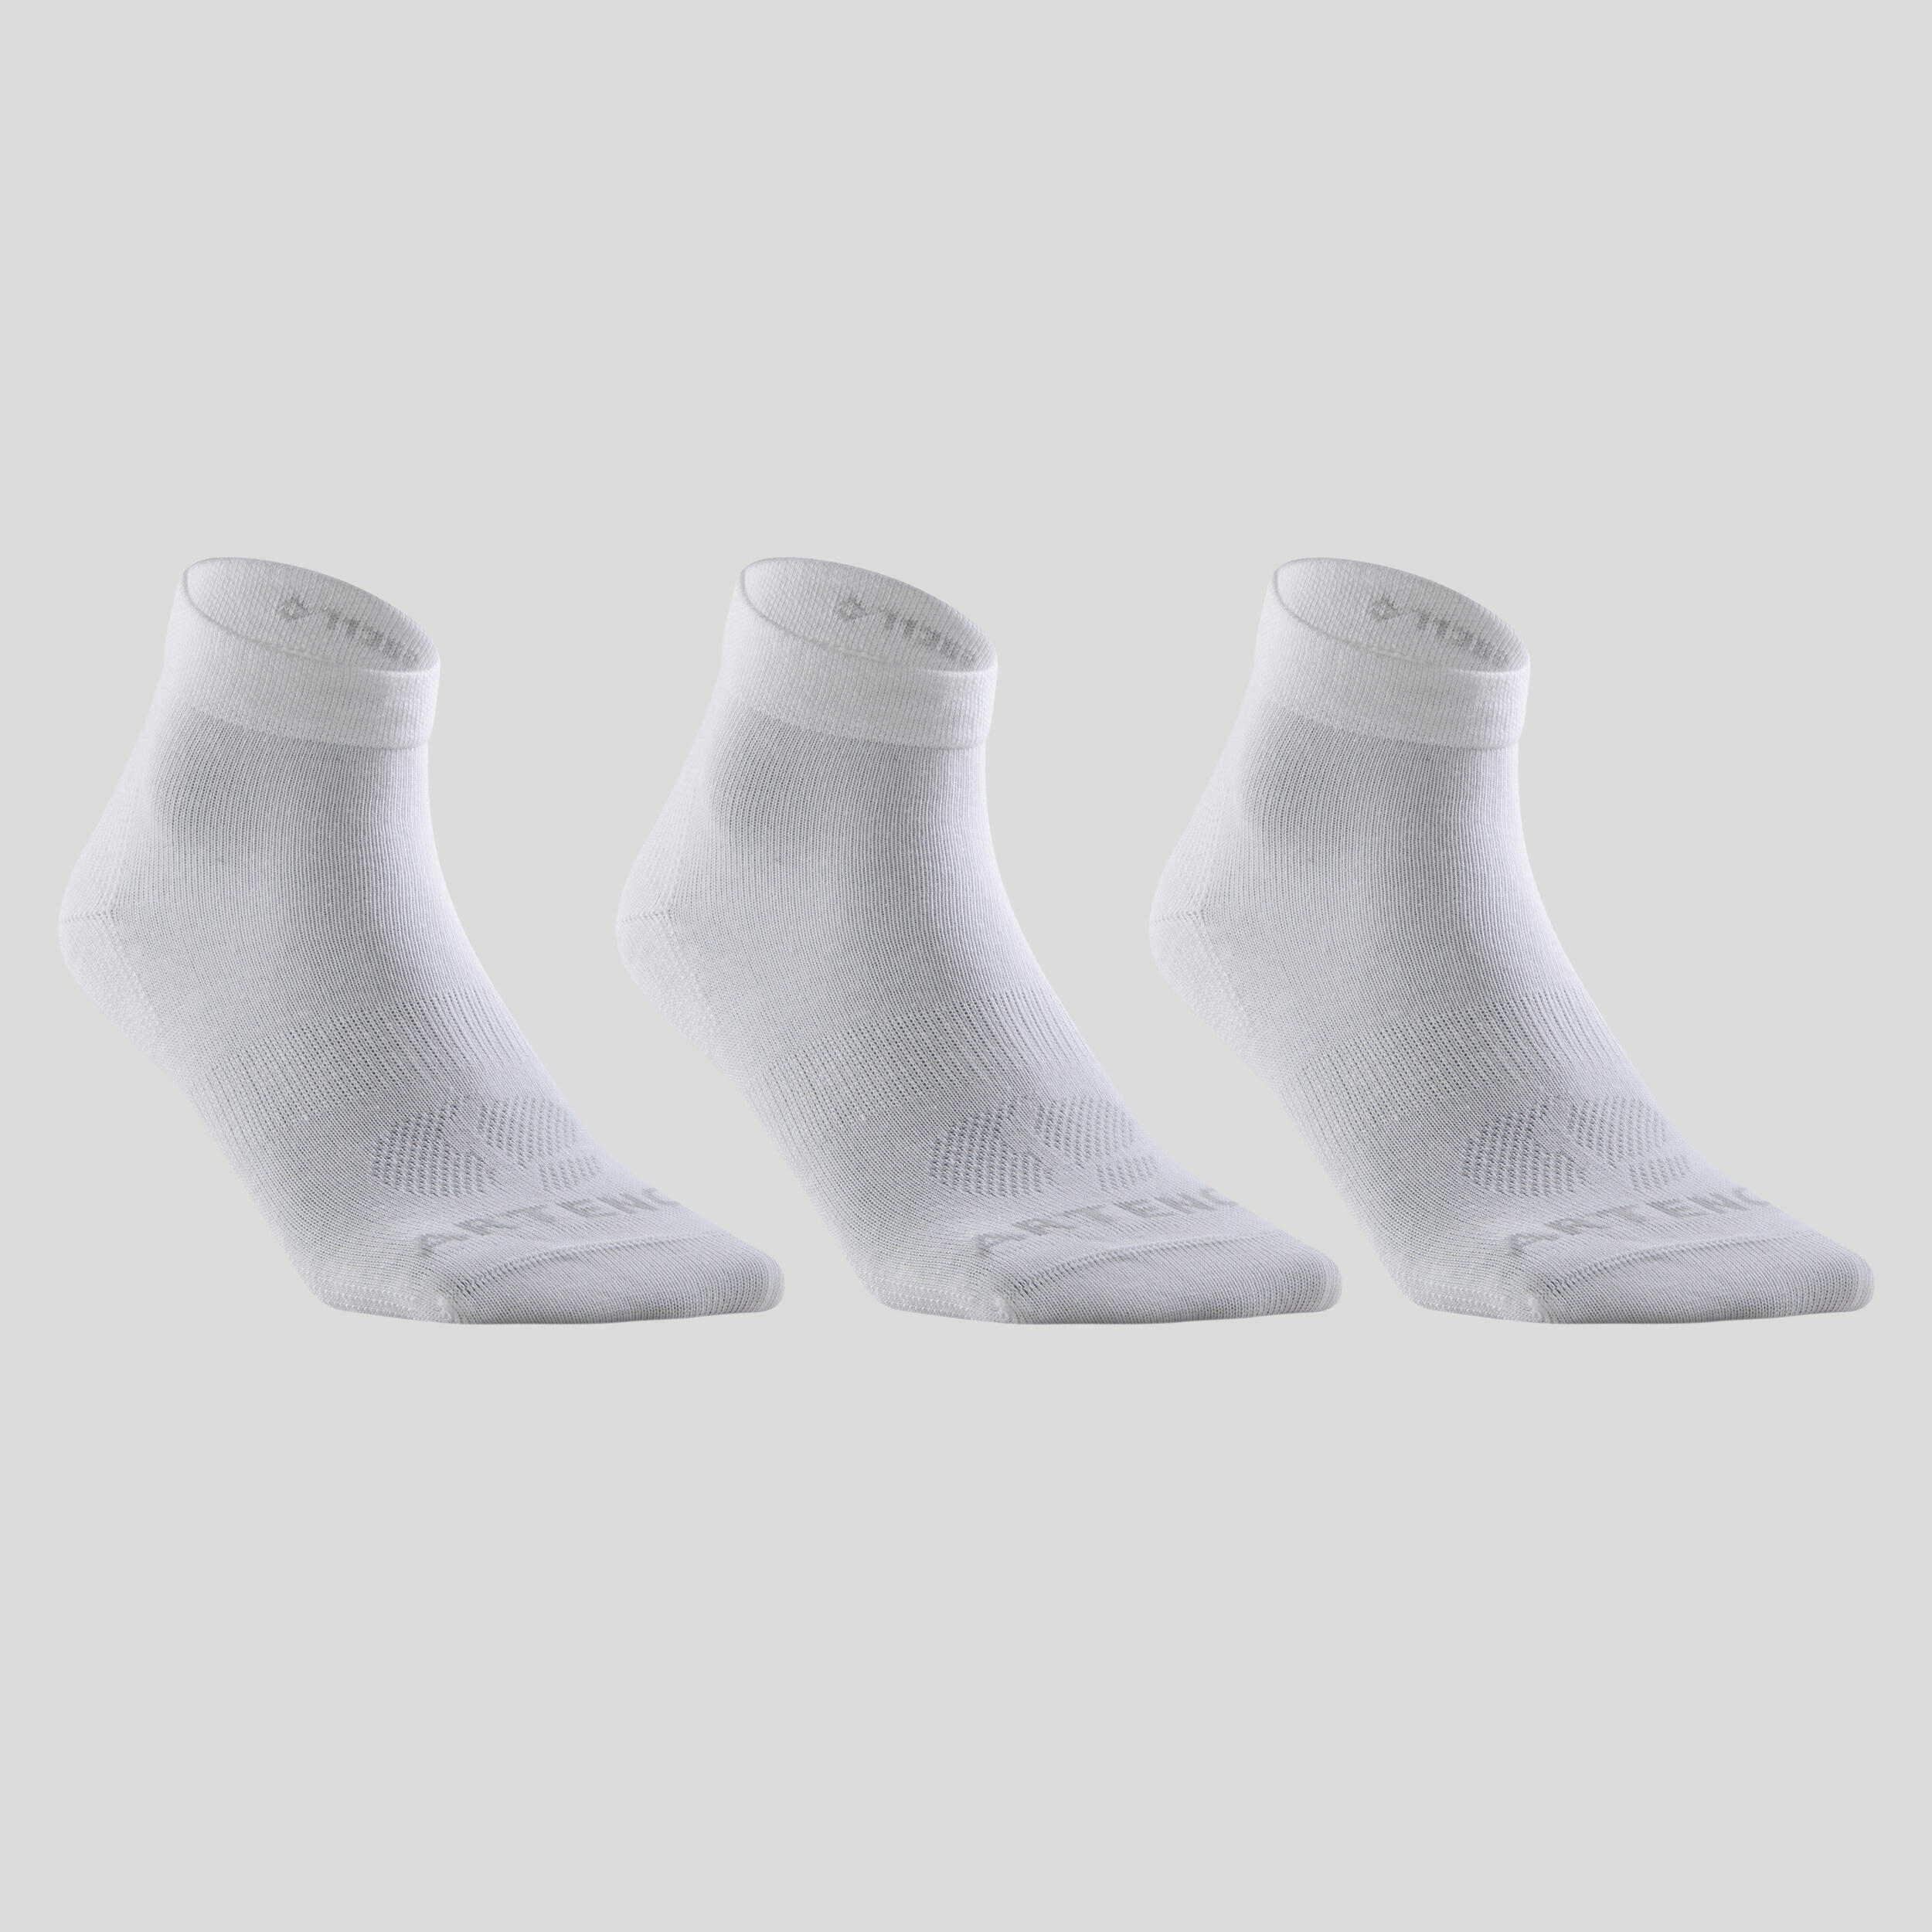 Теннисные носки - RS 160 Mid, 3 шт. в упаковке, белые ARTENGO, белый носки белые детские 3 шт в упаковке